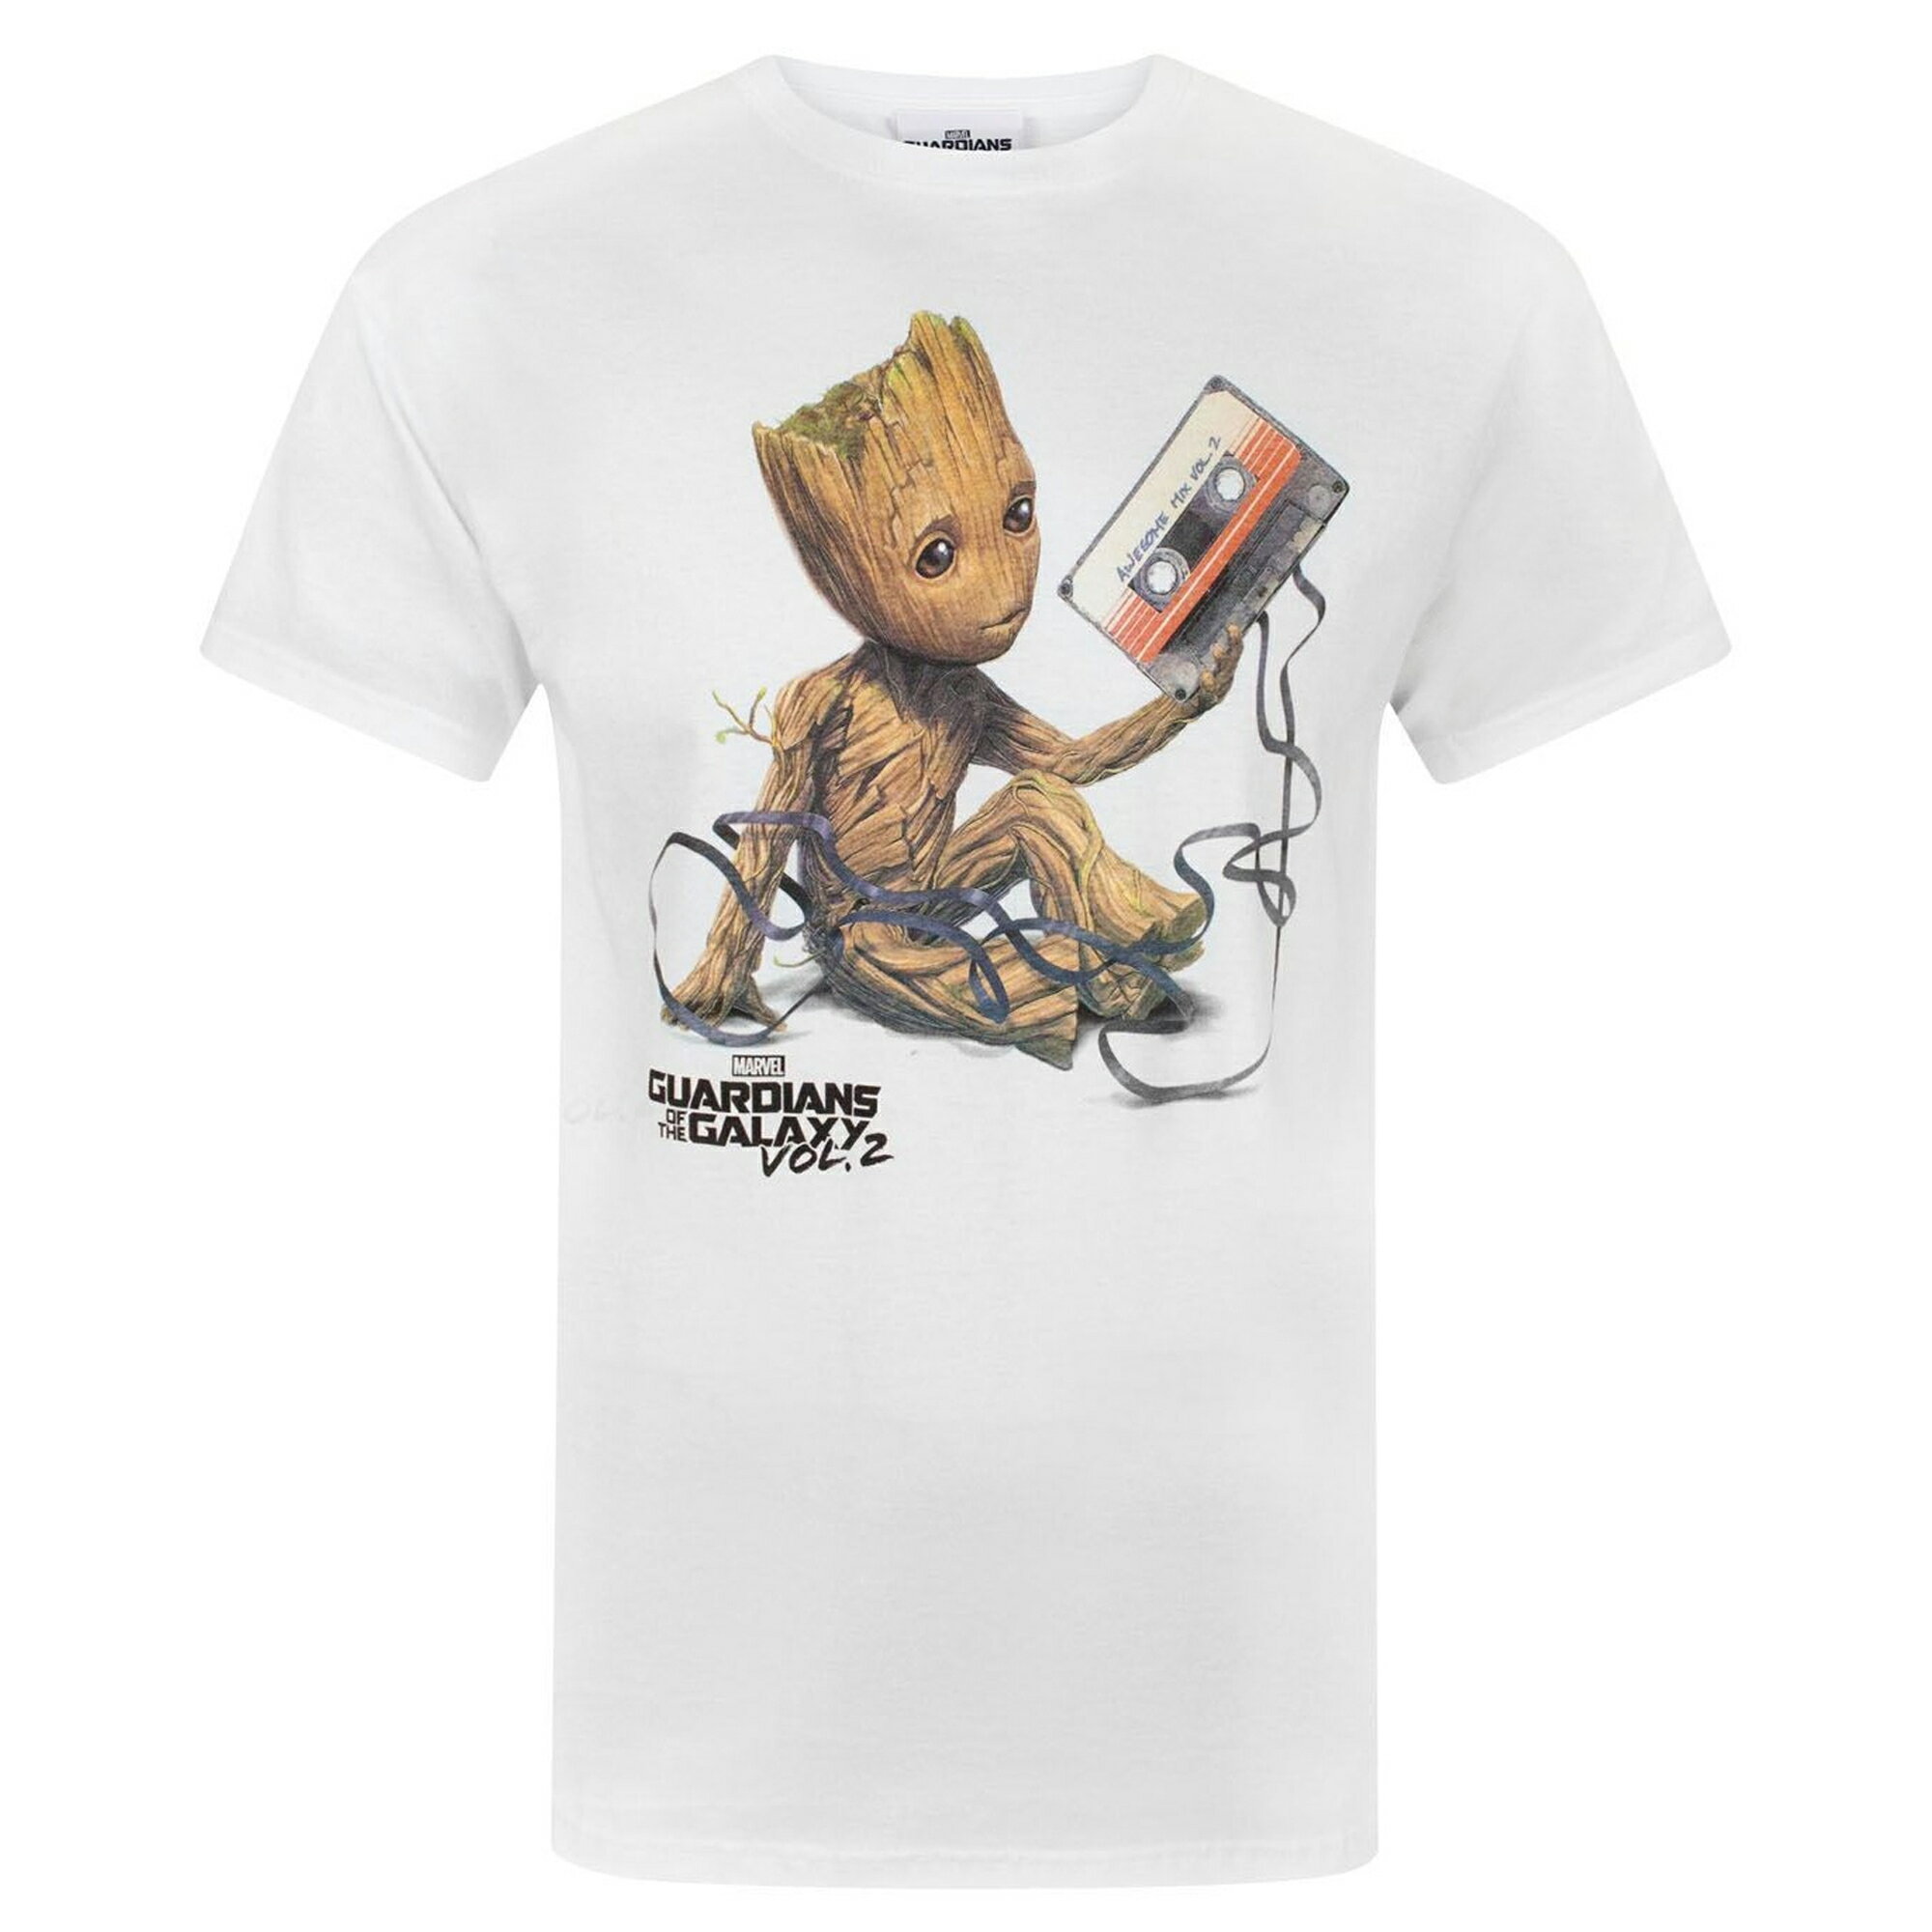 (ガーディアンズ・オブ・ギャラクシー) Guardians Of The Galaxy オフィシャル商品 メンズ Vol 2 グルート テープ Tシャツ 半袖 カットソー トップス 